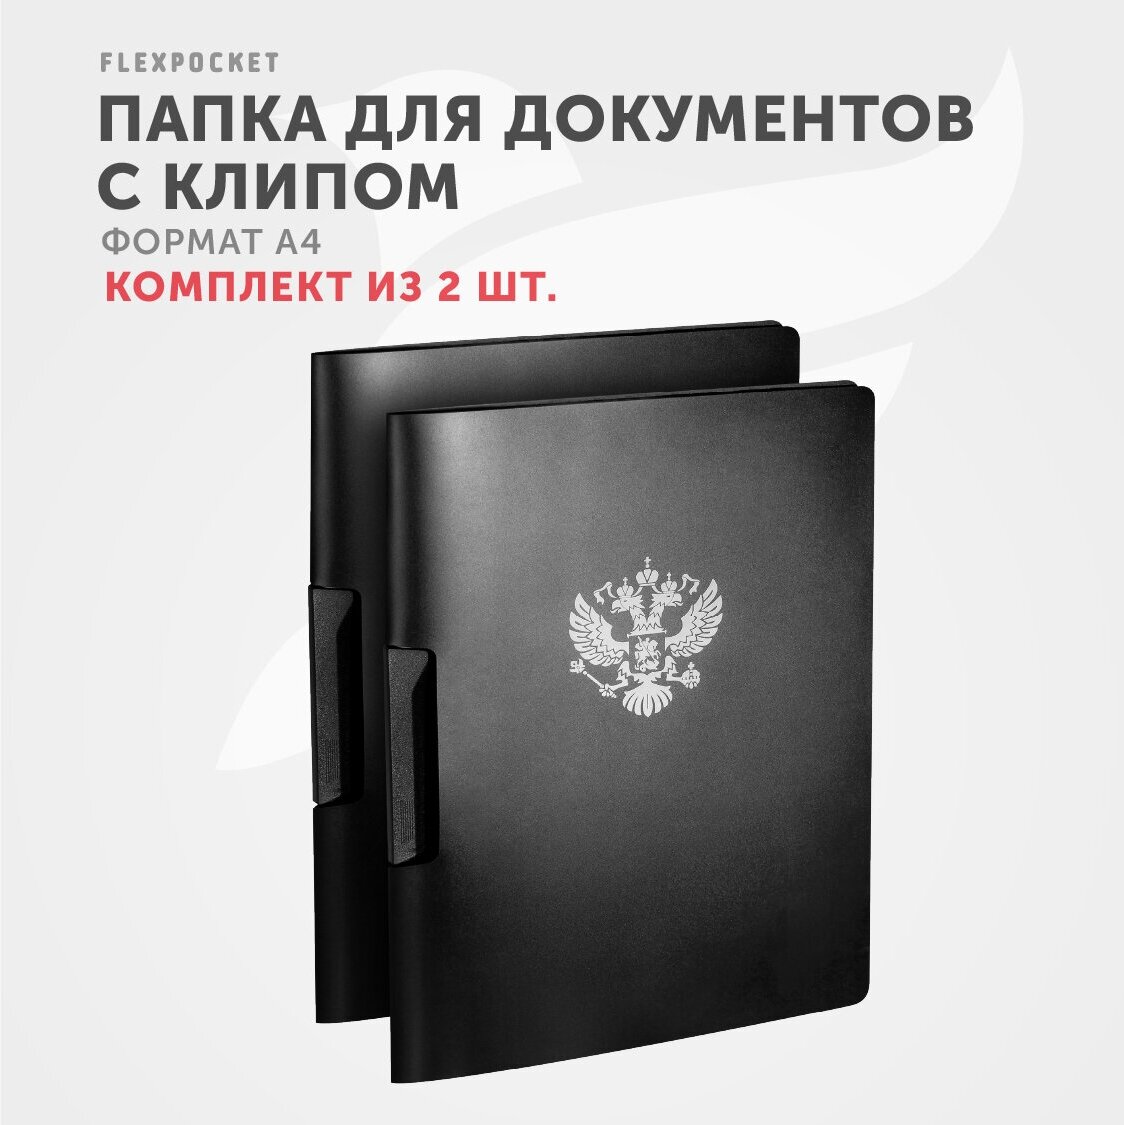 Папка канцелярская с клипом для документов и бумаг формат А4 Flexpocket / комплект из 2 папок, цвет черный, серебряный герб